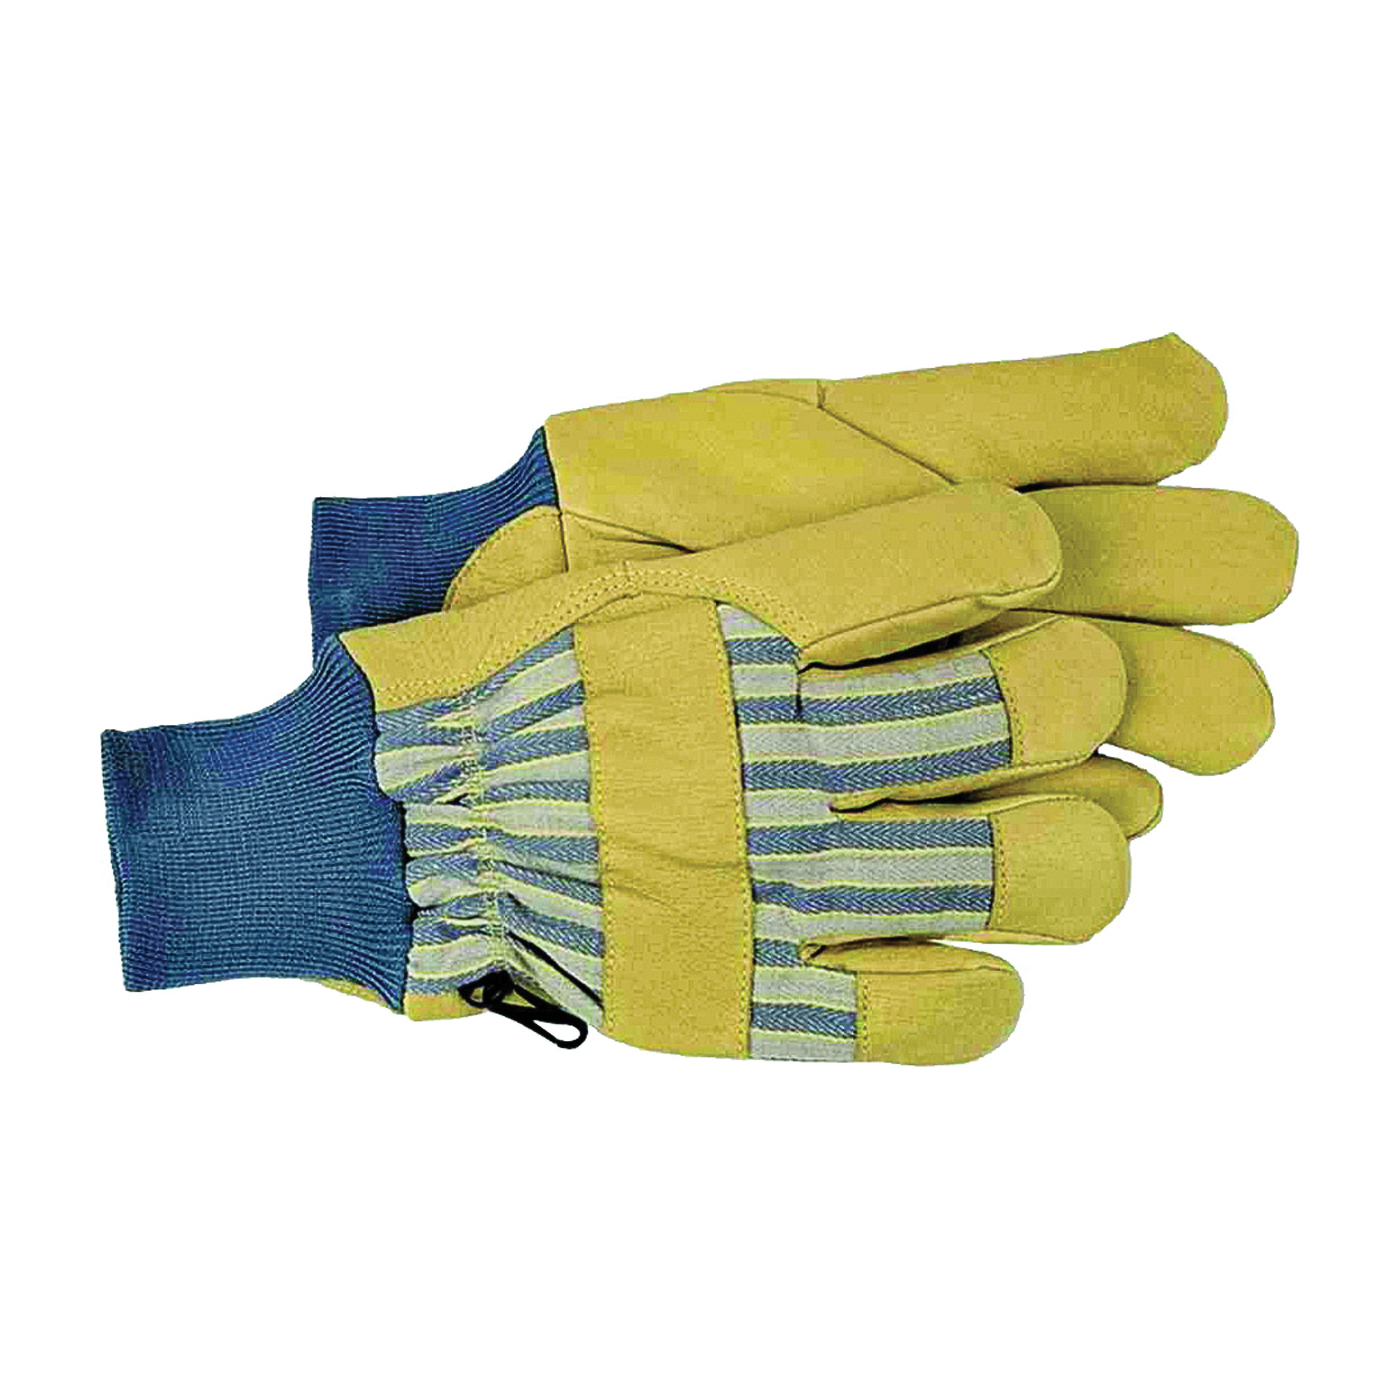 4341L Protective Gloves, L, Wing Thumb, Knit Wrist Cuff, Blue/Tan